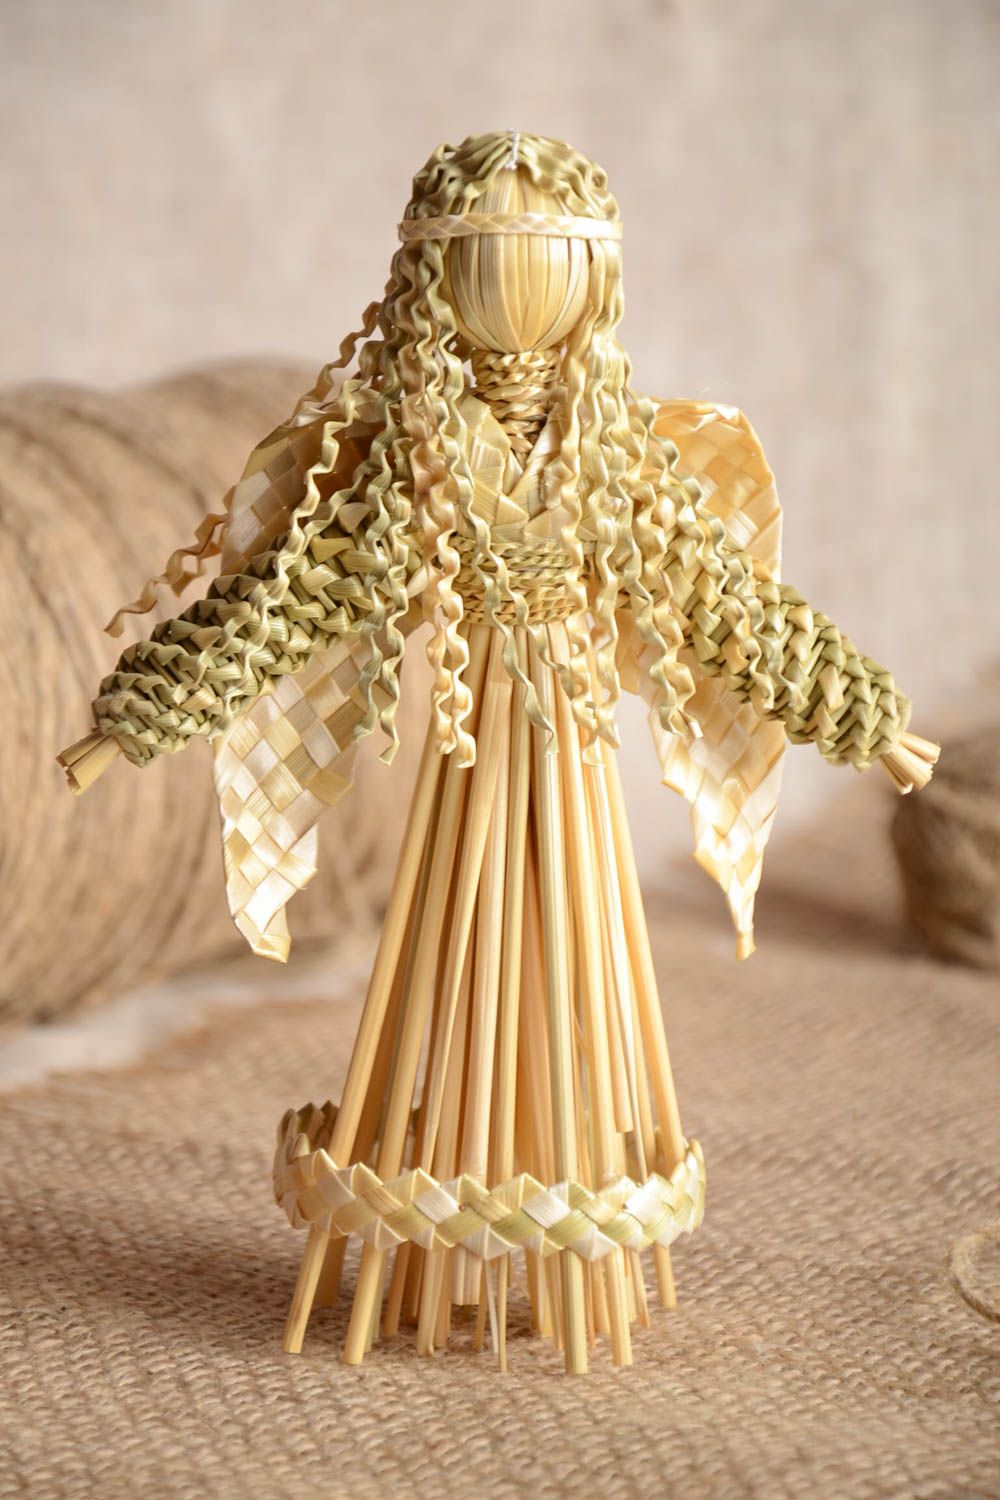 Декоративная игрушка из натуральной соломы ручной работы в виде ангела фото 1